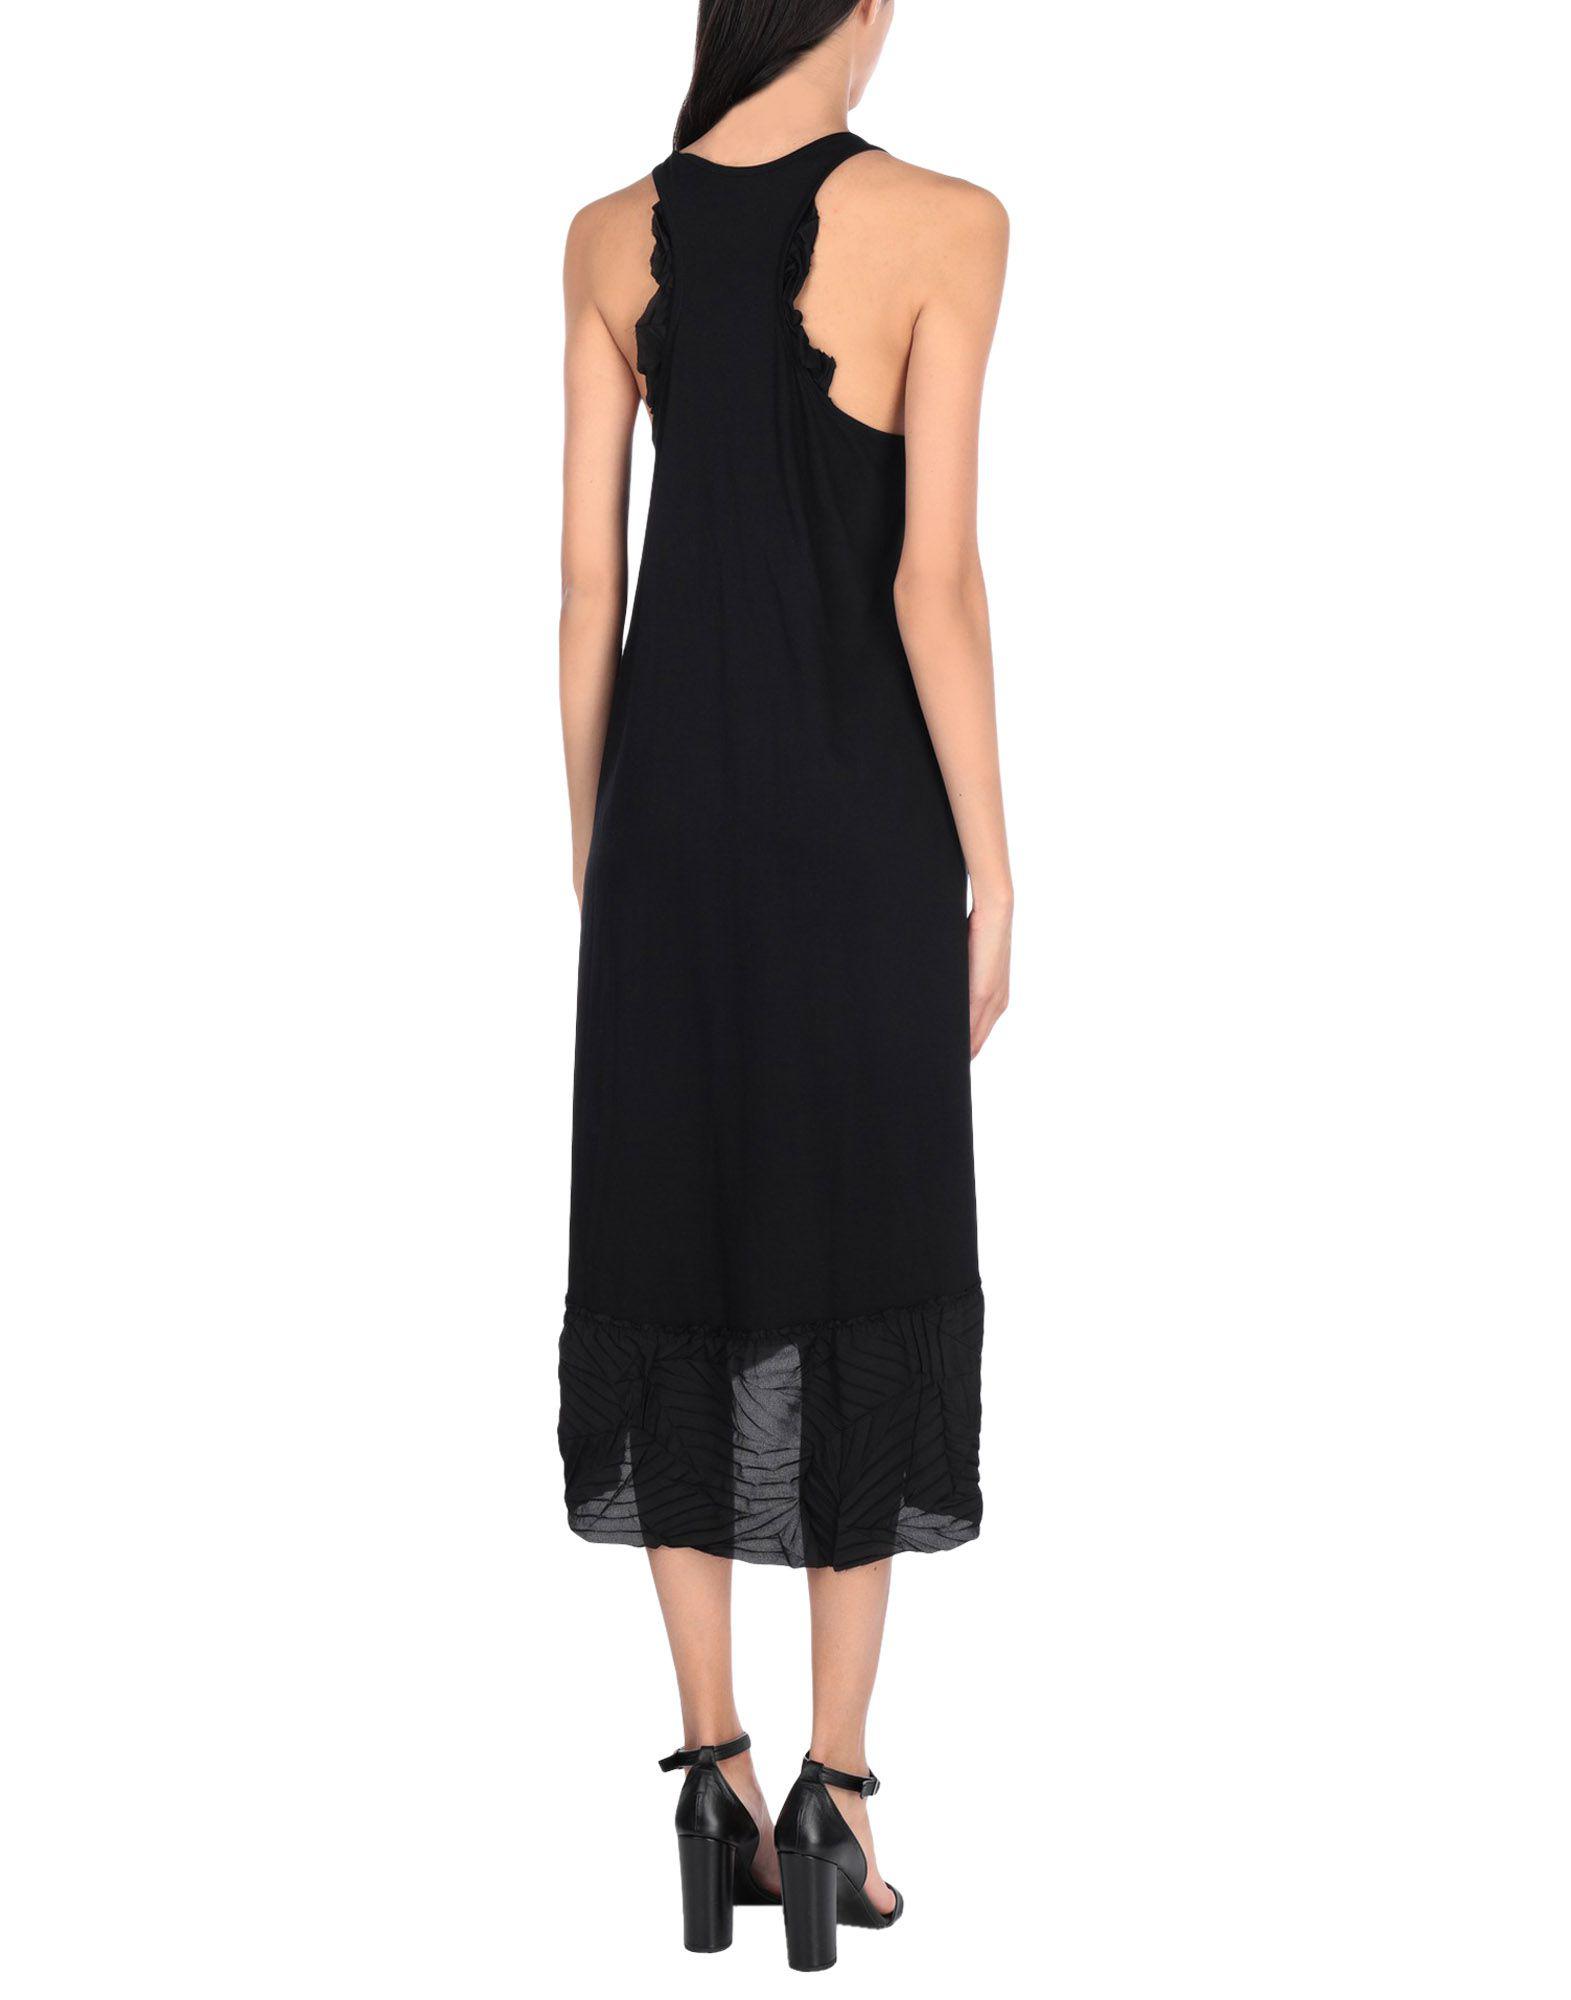 Devotion Synthetic Knee-length Dress in Black - Lyst